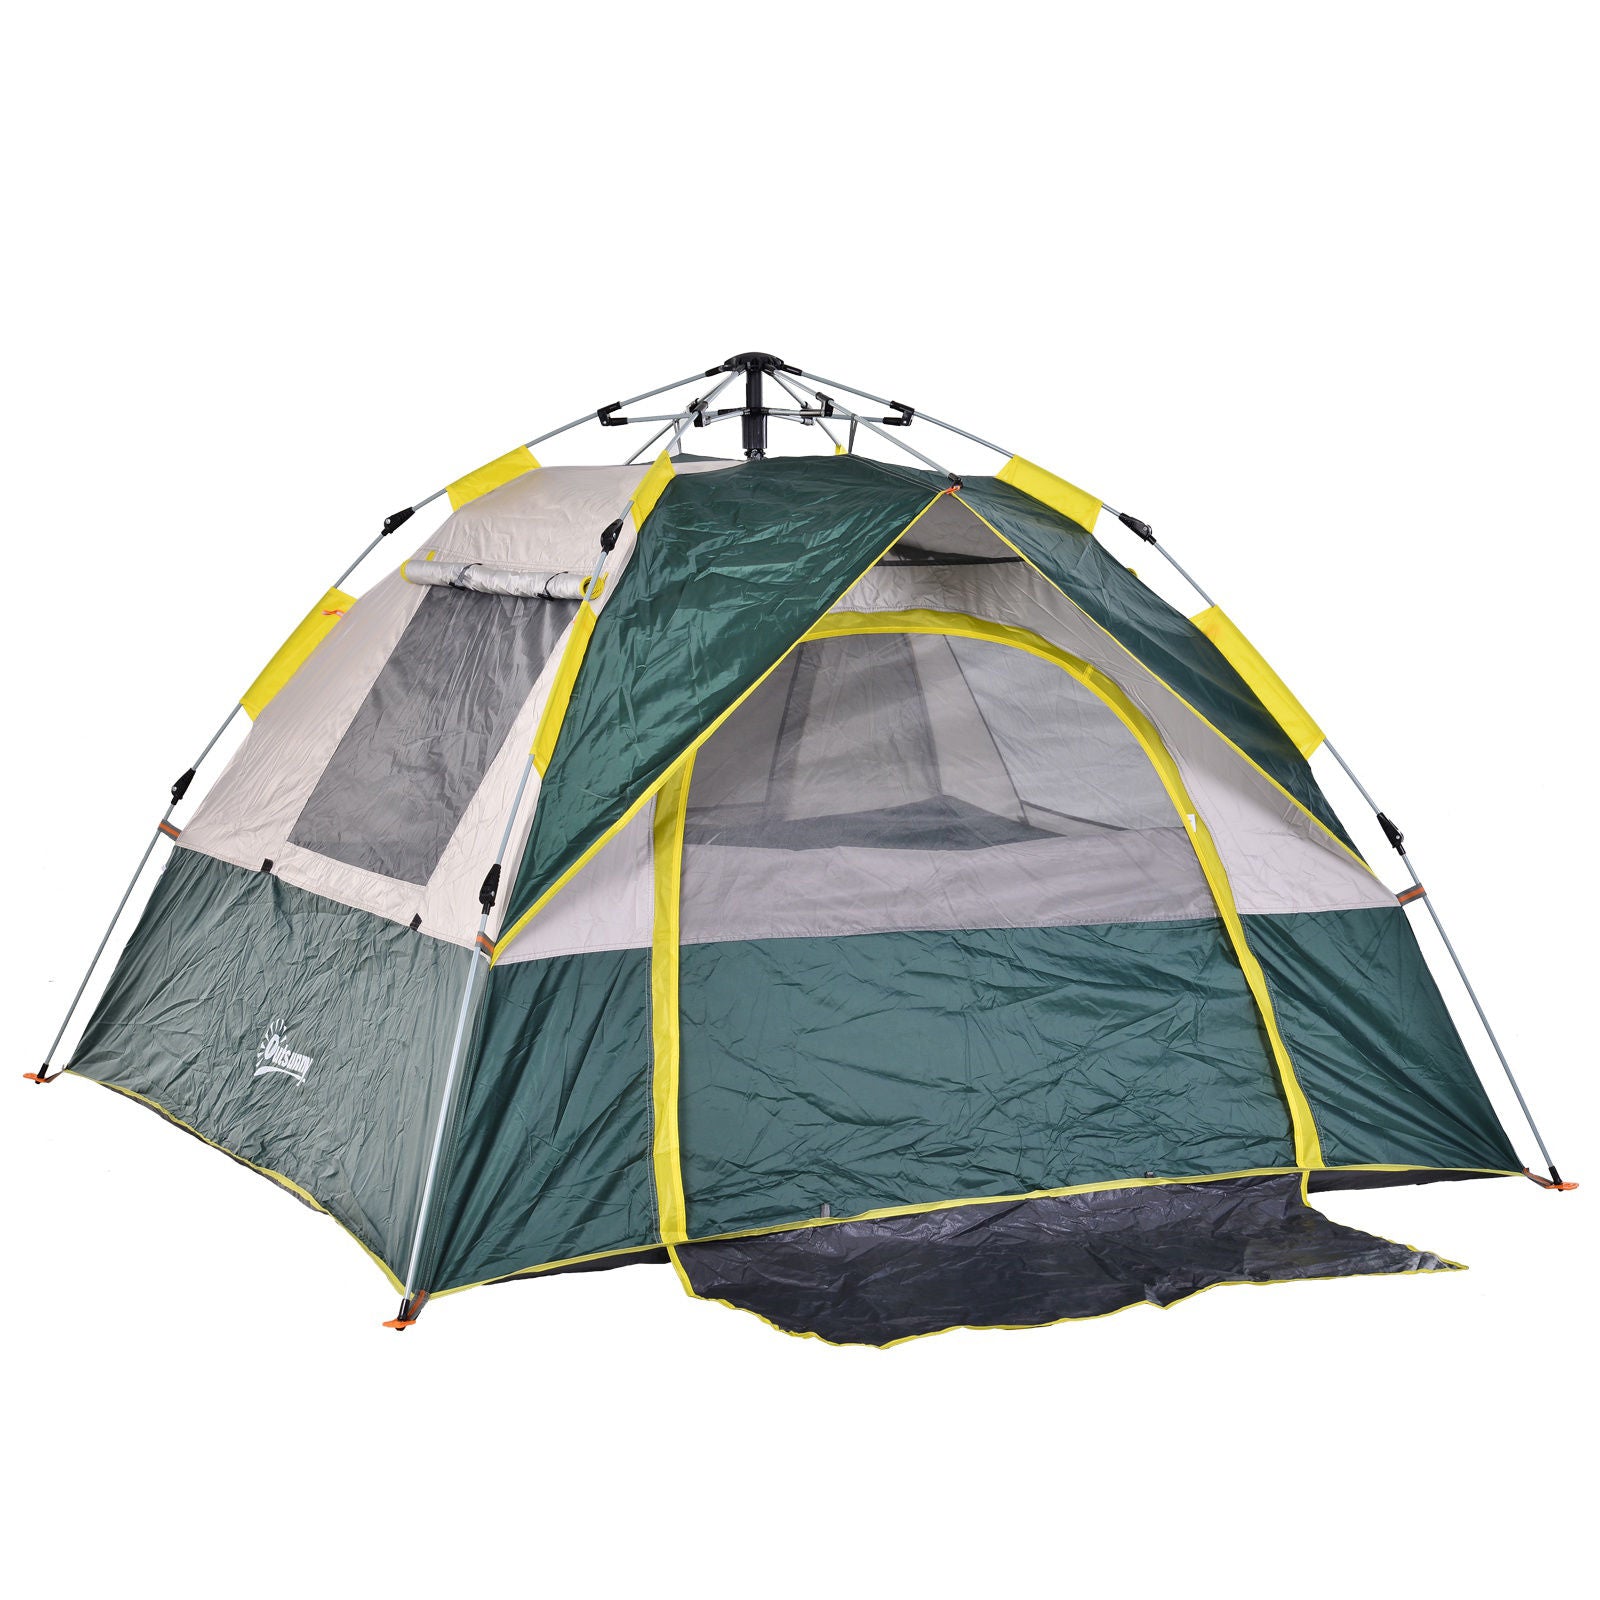 Tente de camping Nancy's Pettville - Vert - Polyester, Tissu, Fibre de verre - 80,7 cm x 76,77 cm x 53,14 cm